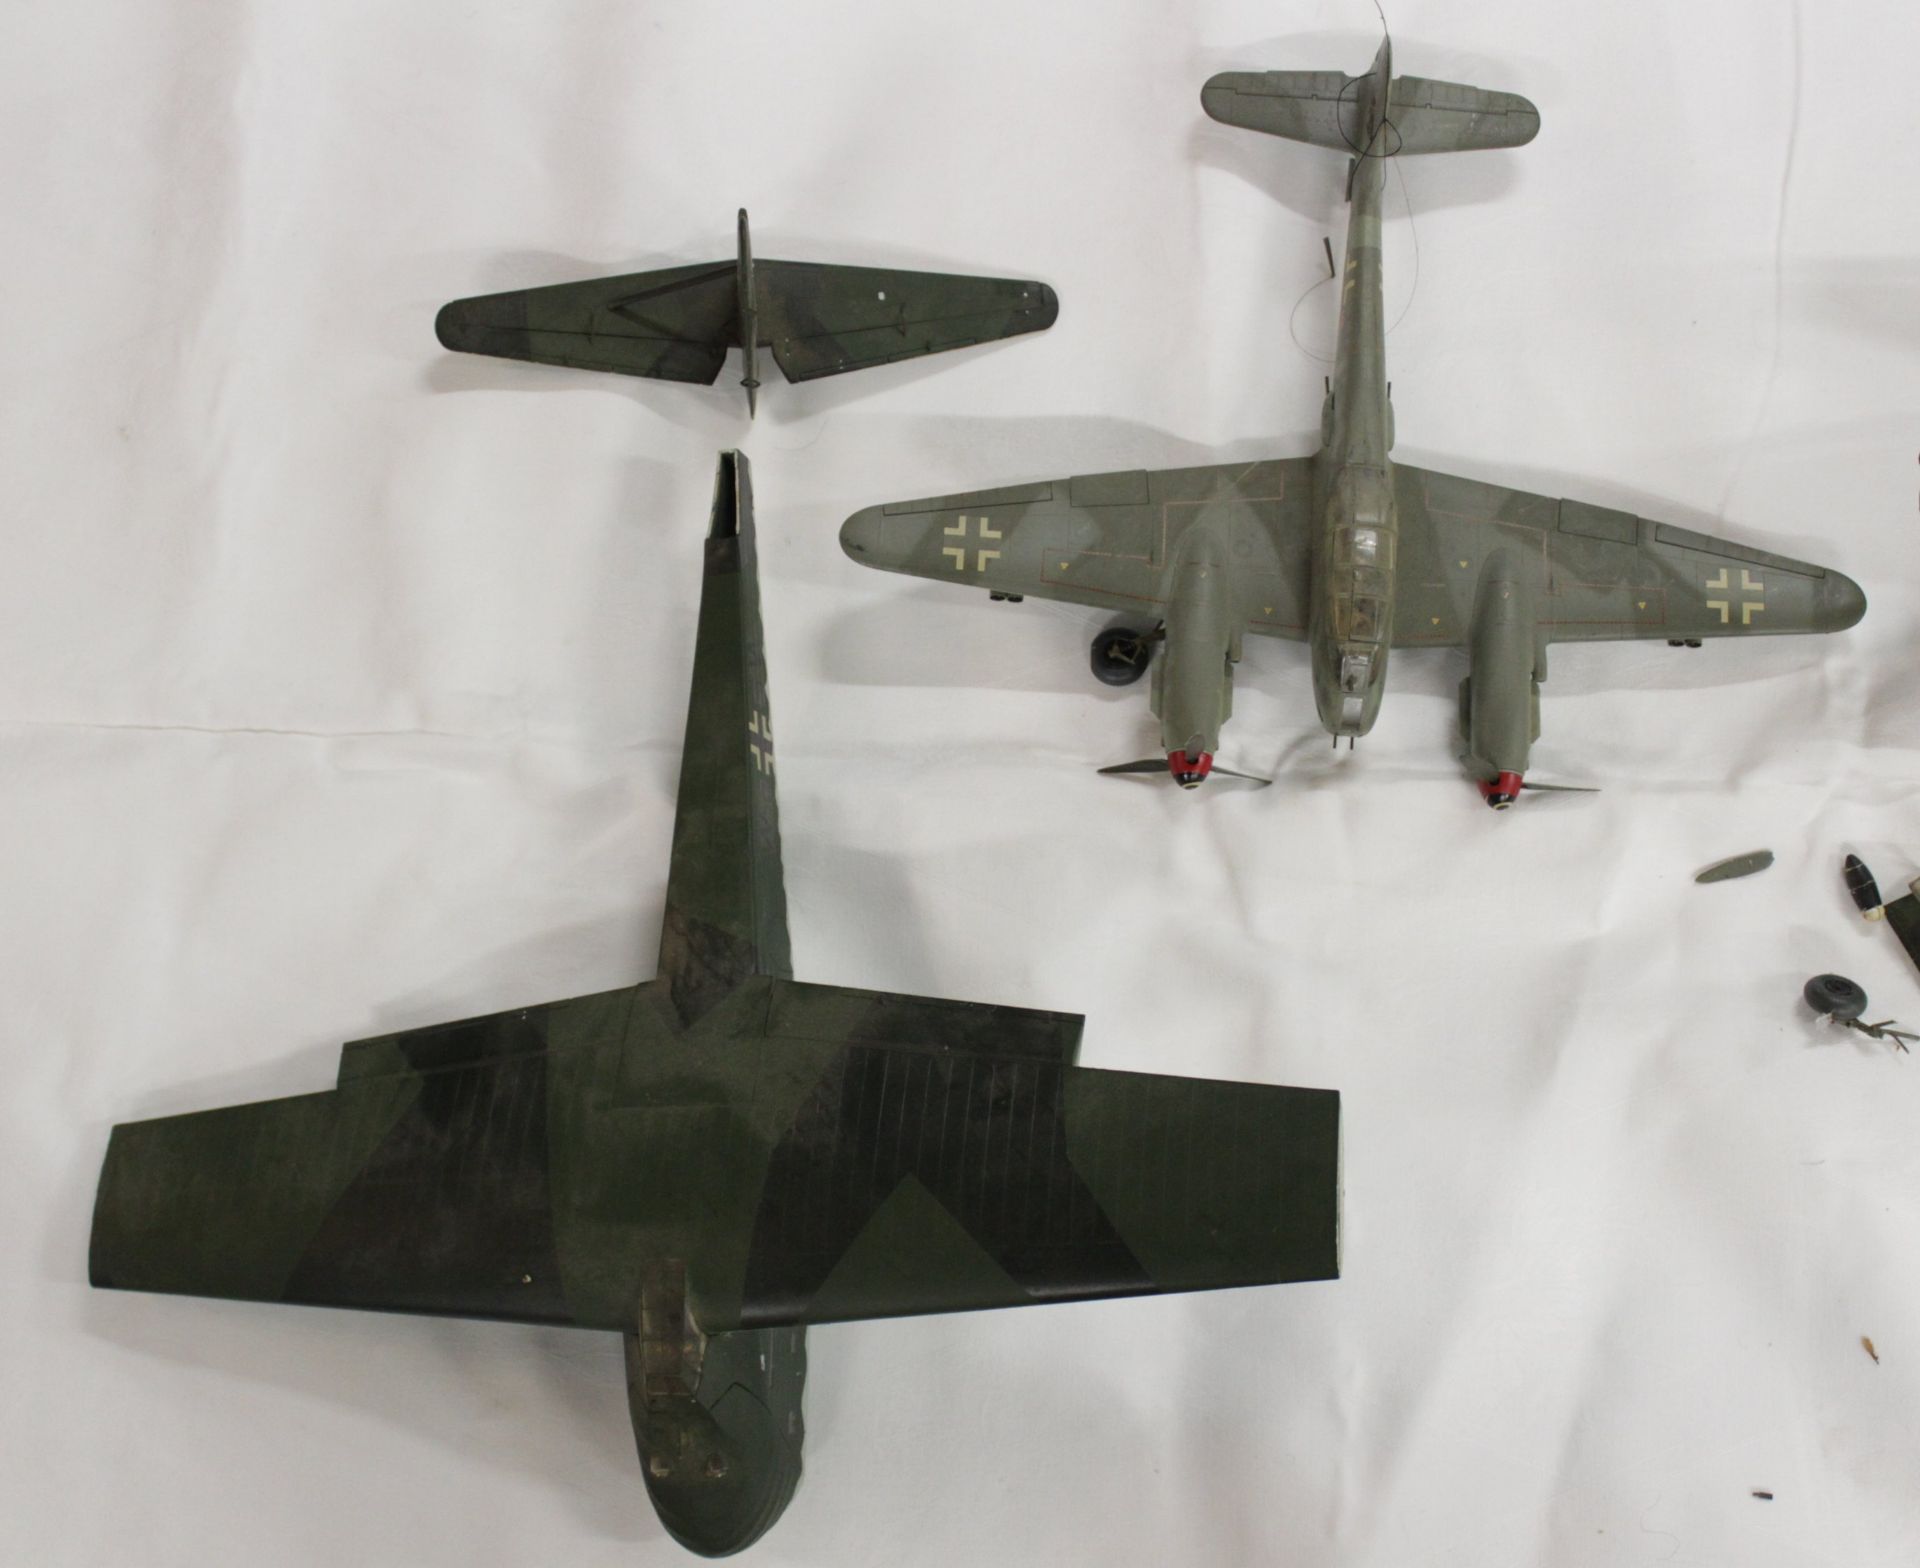 Konvolut div. Modell-Flugzeuge, meist mit Beschädigung (Teile lose, abgebrochen etc.), Vollständigk - Image 13 of 15